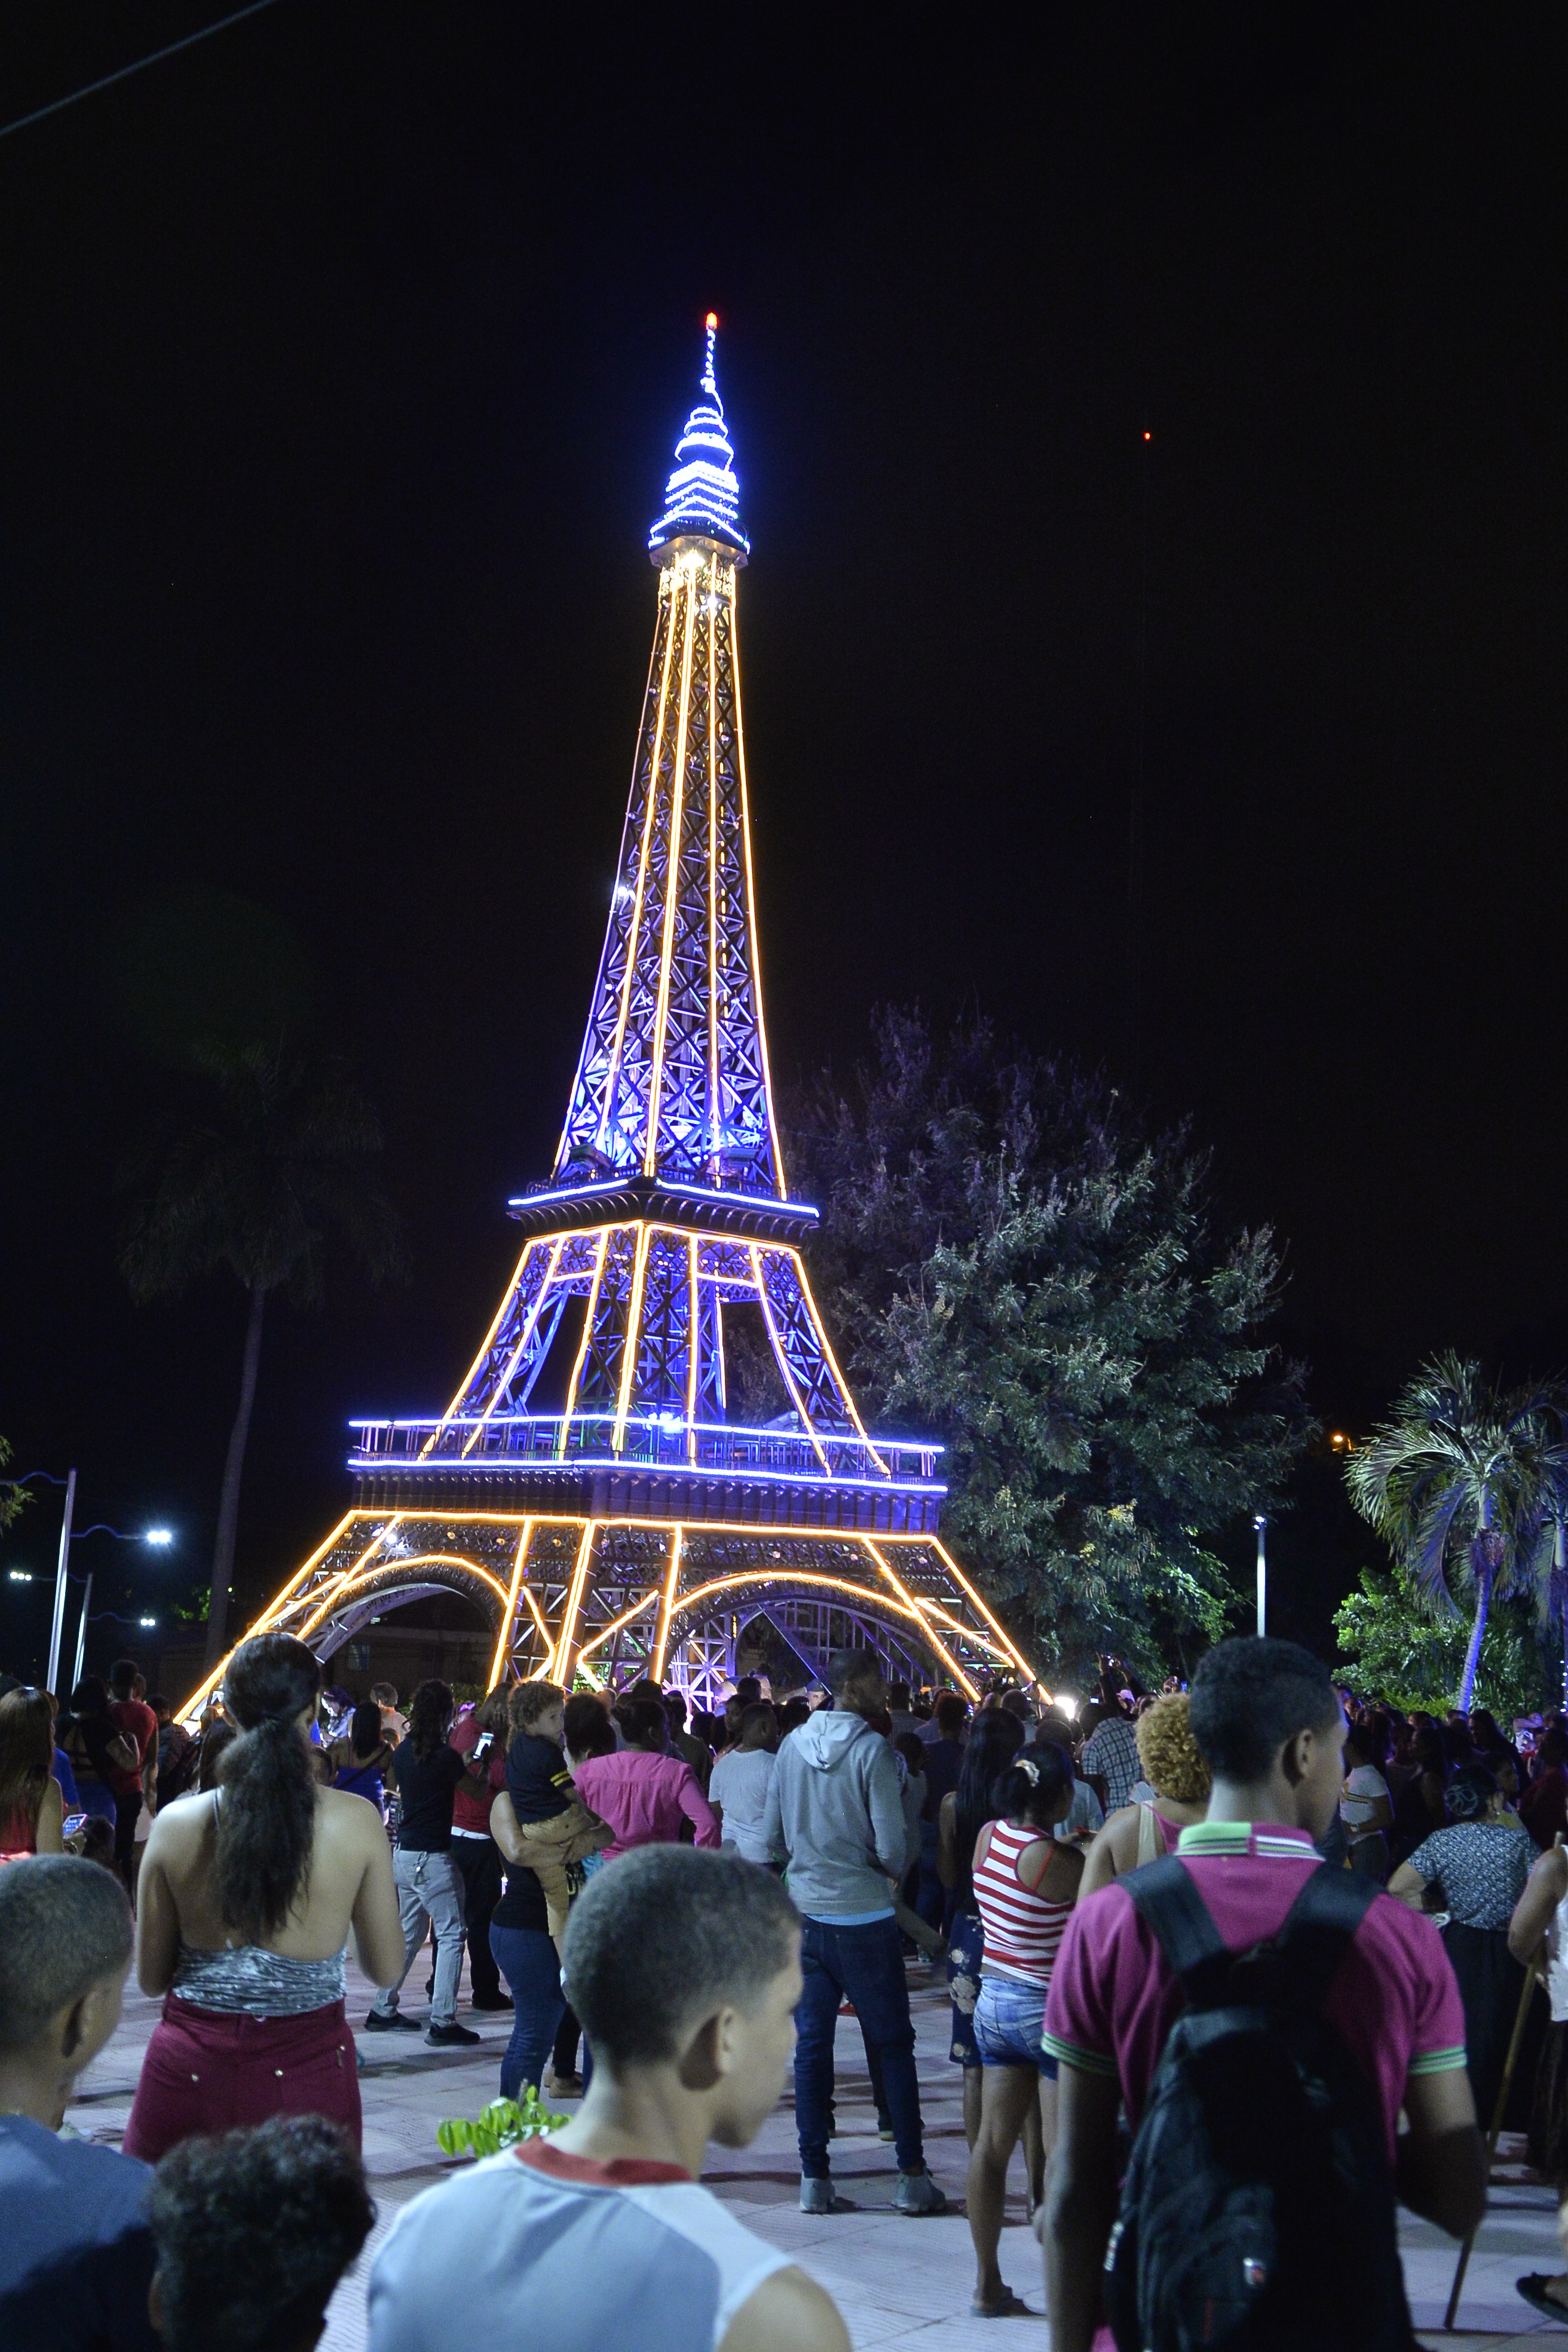 Inauguración de árbol temático “Torre Eiffel” en Las Caobas